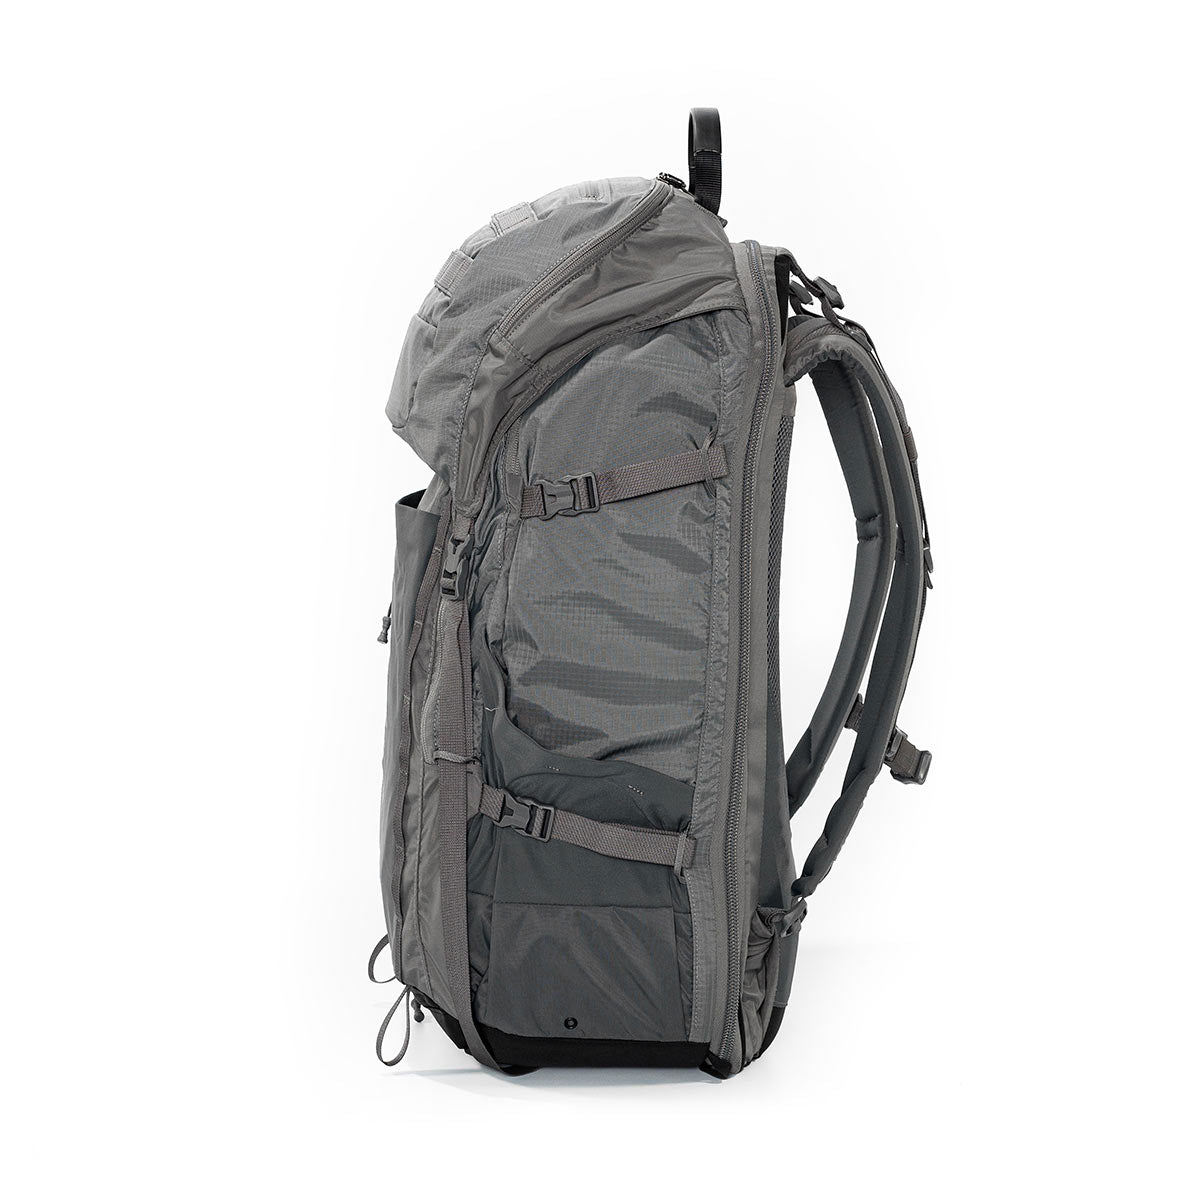 Atlas Adventure Medium Backpack (Gray)